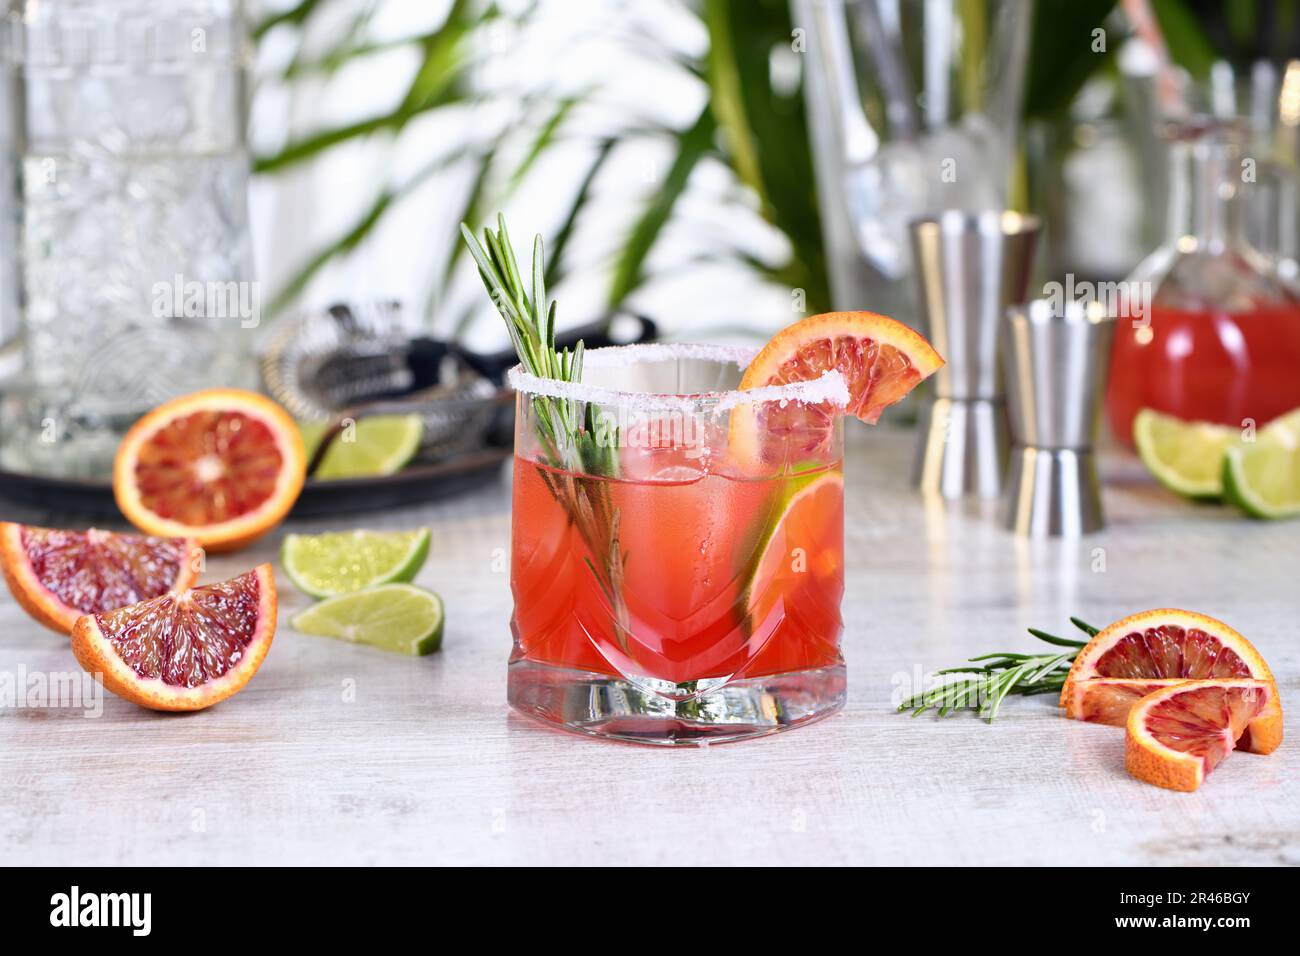 Roter sizilianischer Orange Paloma Cocktail mit Tequila, frischer Limette und Rosmarin mit rotem sizilianischem Orangensaft. Dieser Cocktail ist voller heller Zitrusaromen Stockfoto